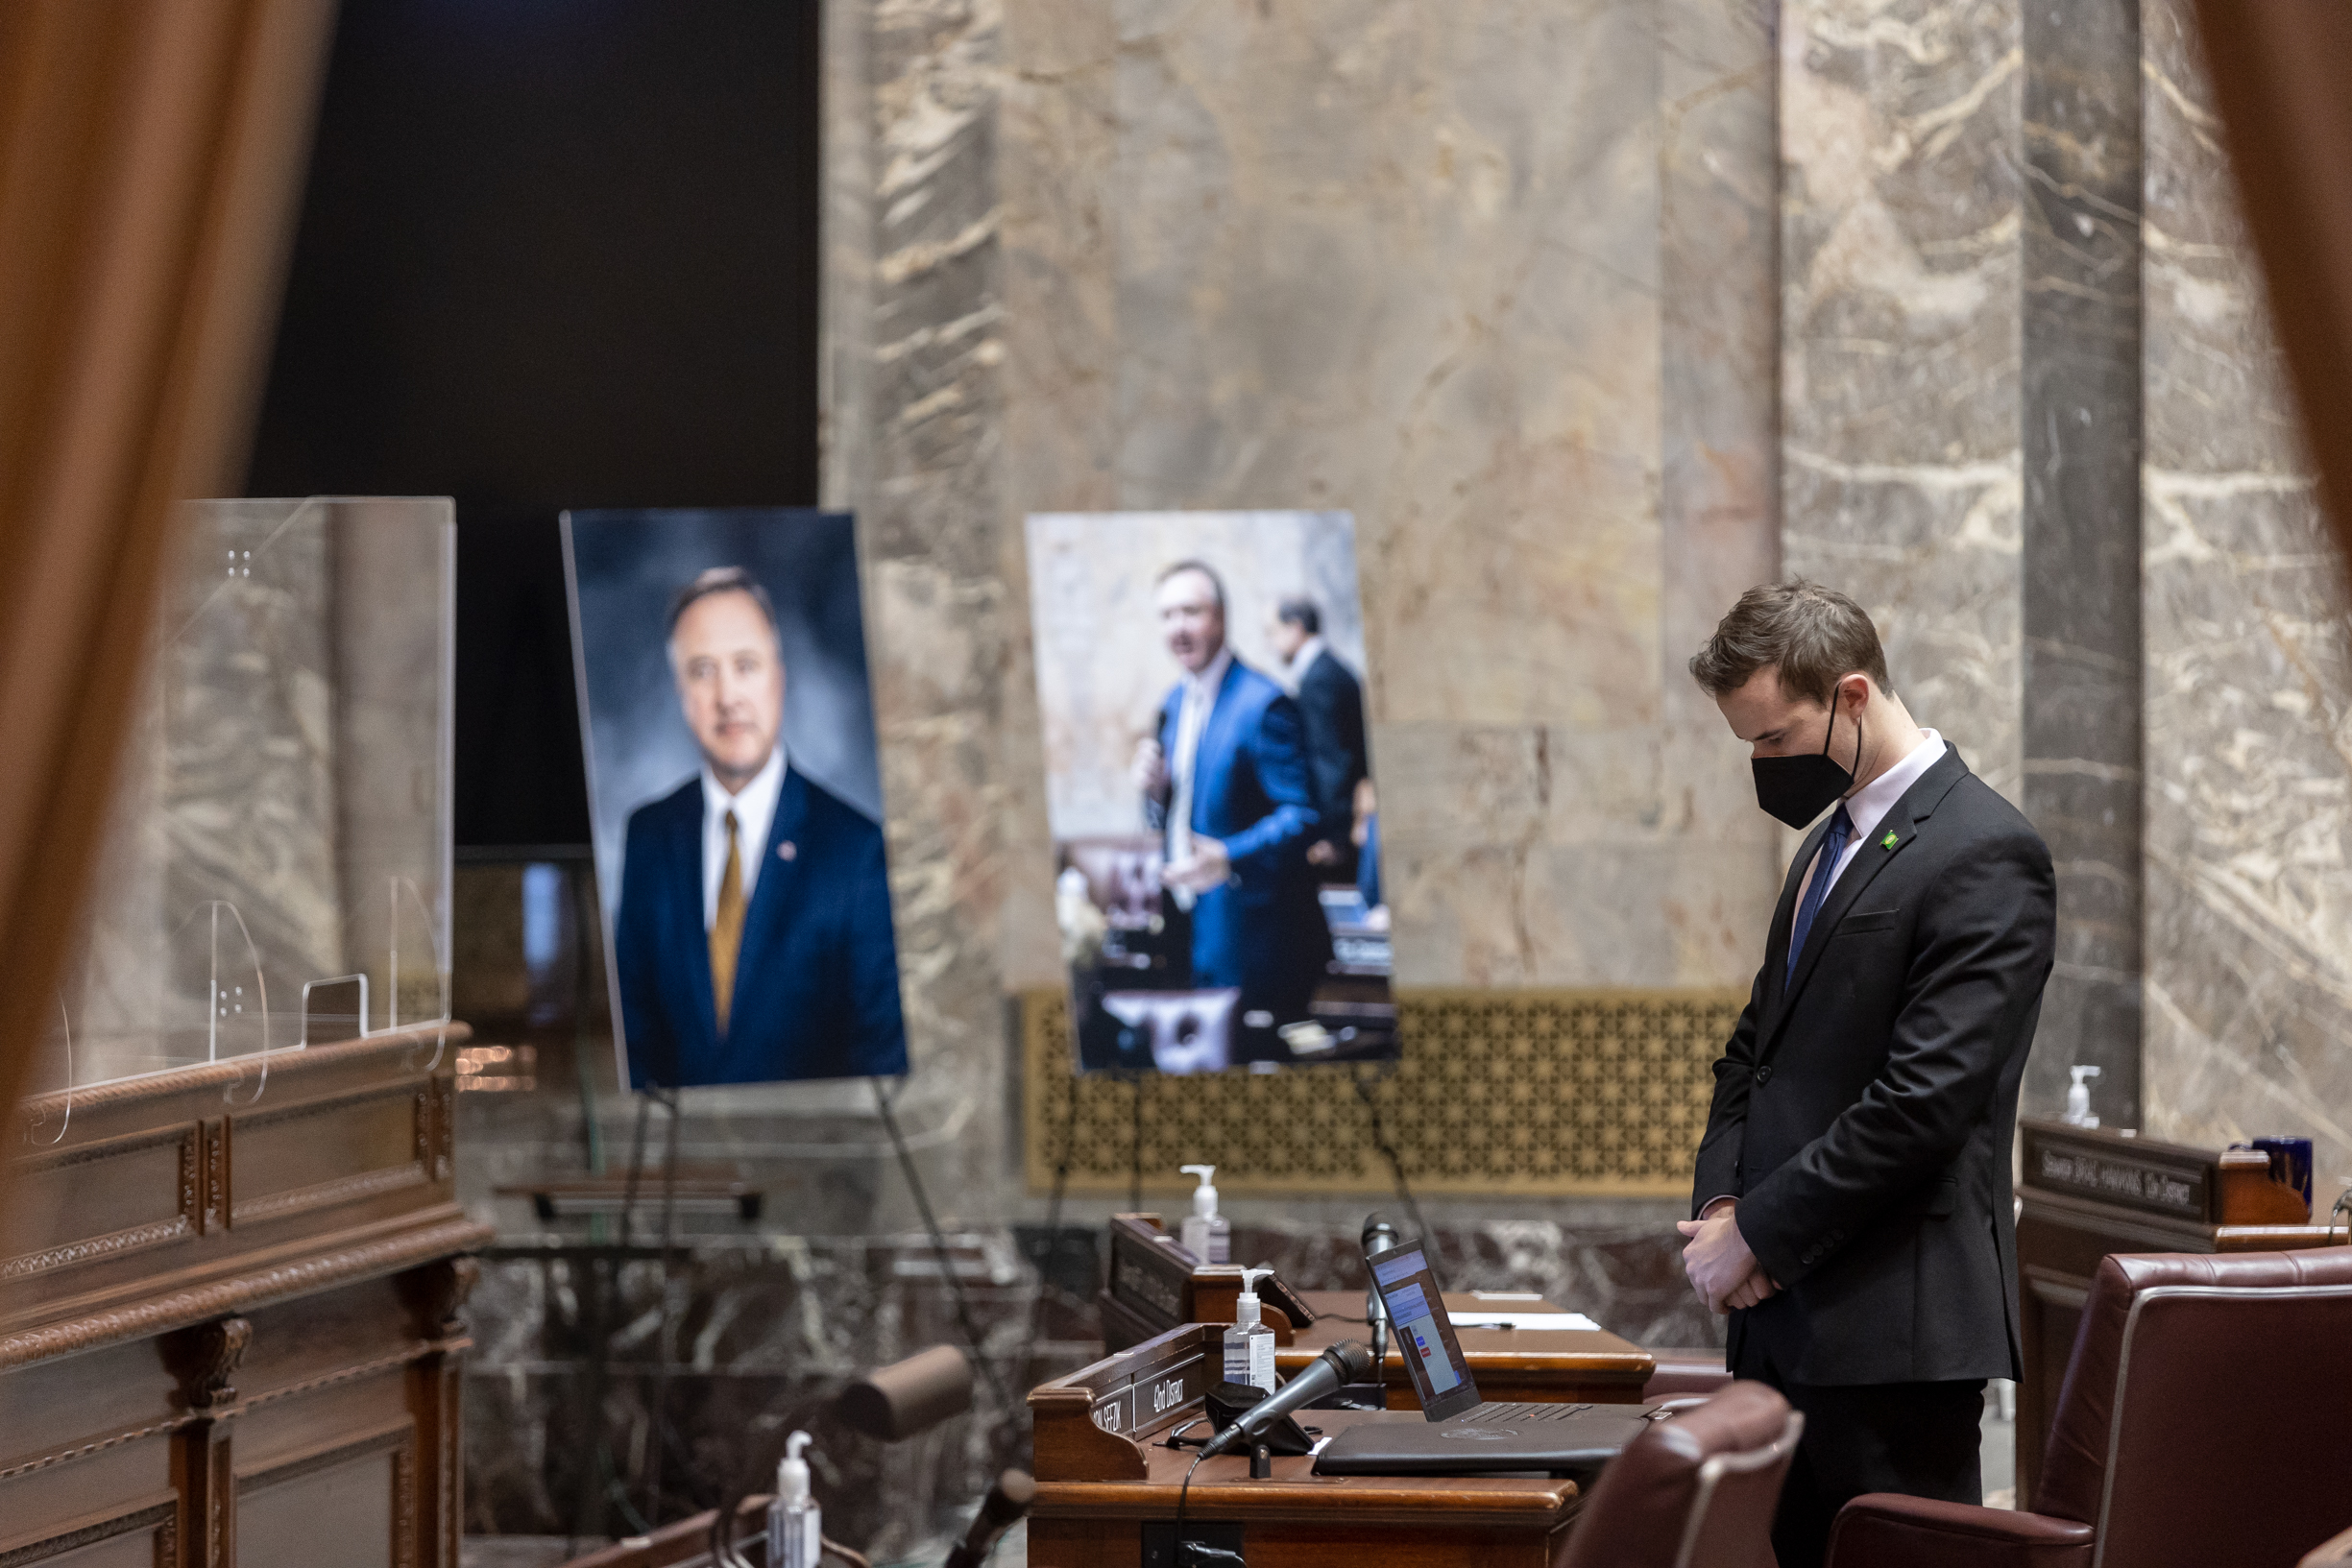 AUDIO: State Senate pays tribute to Sen. Doug Ericksen